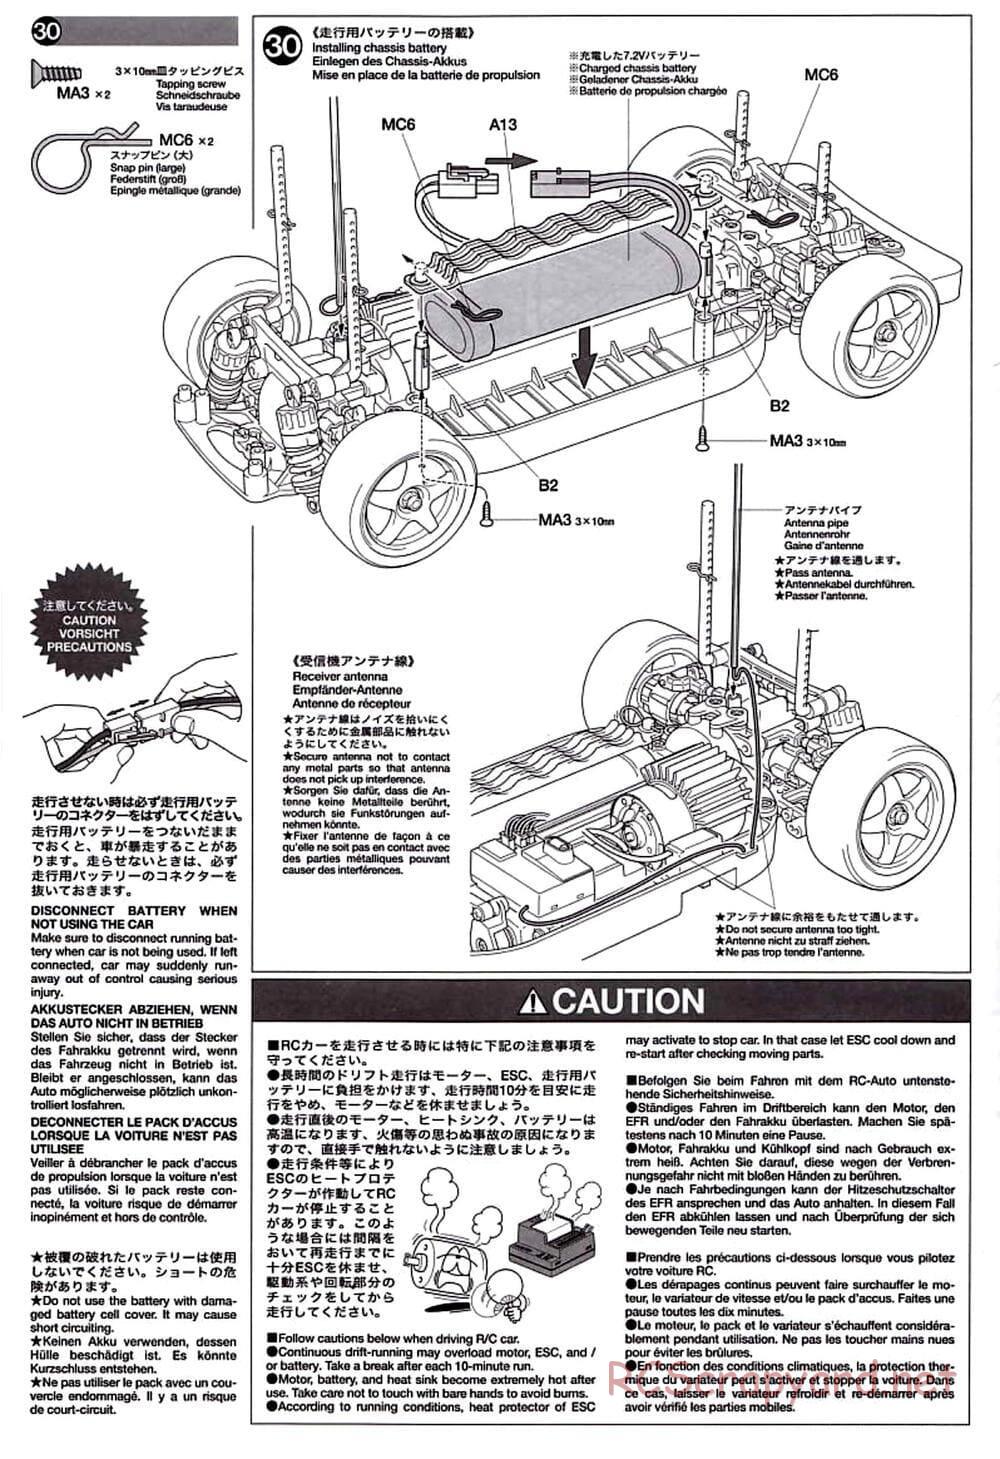 Tamiya - TT-01D Chassis - Manual - Page 16